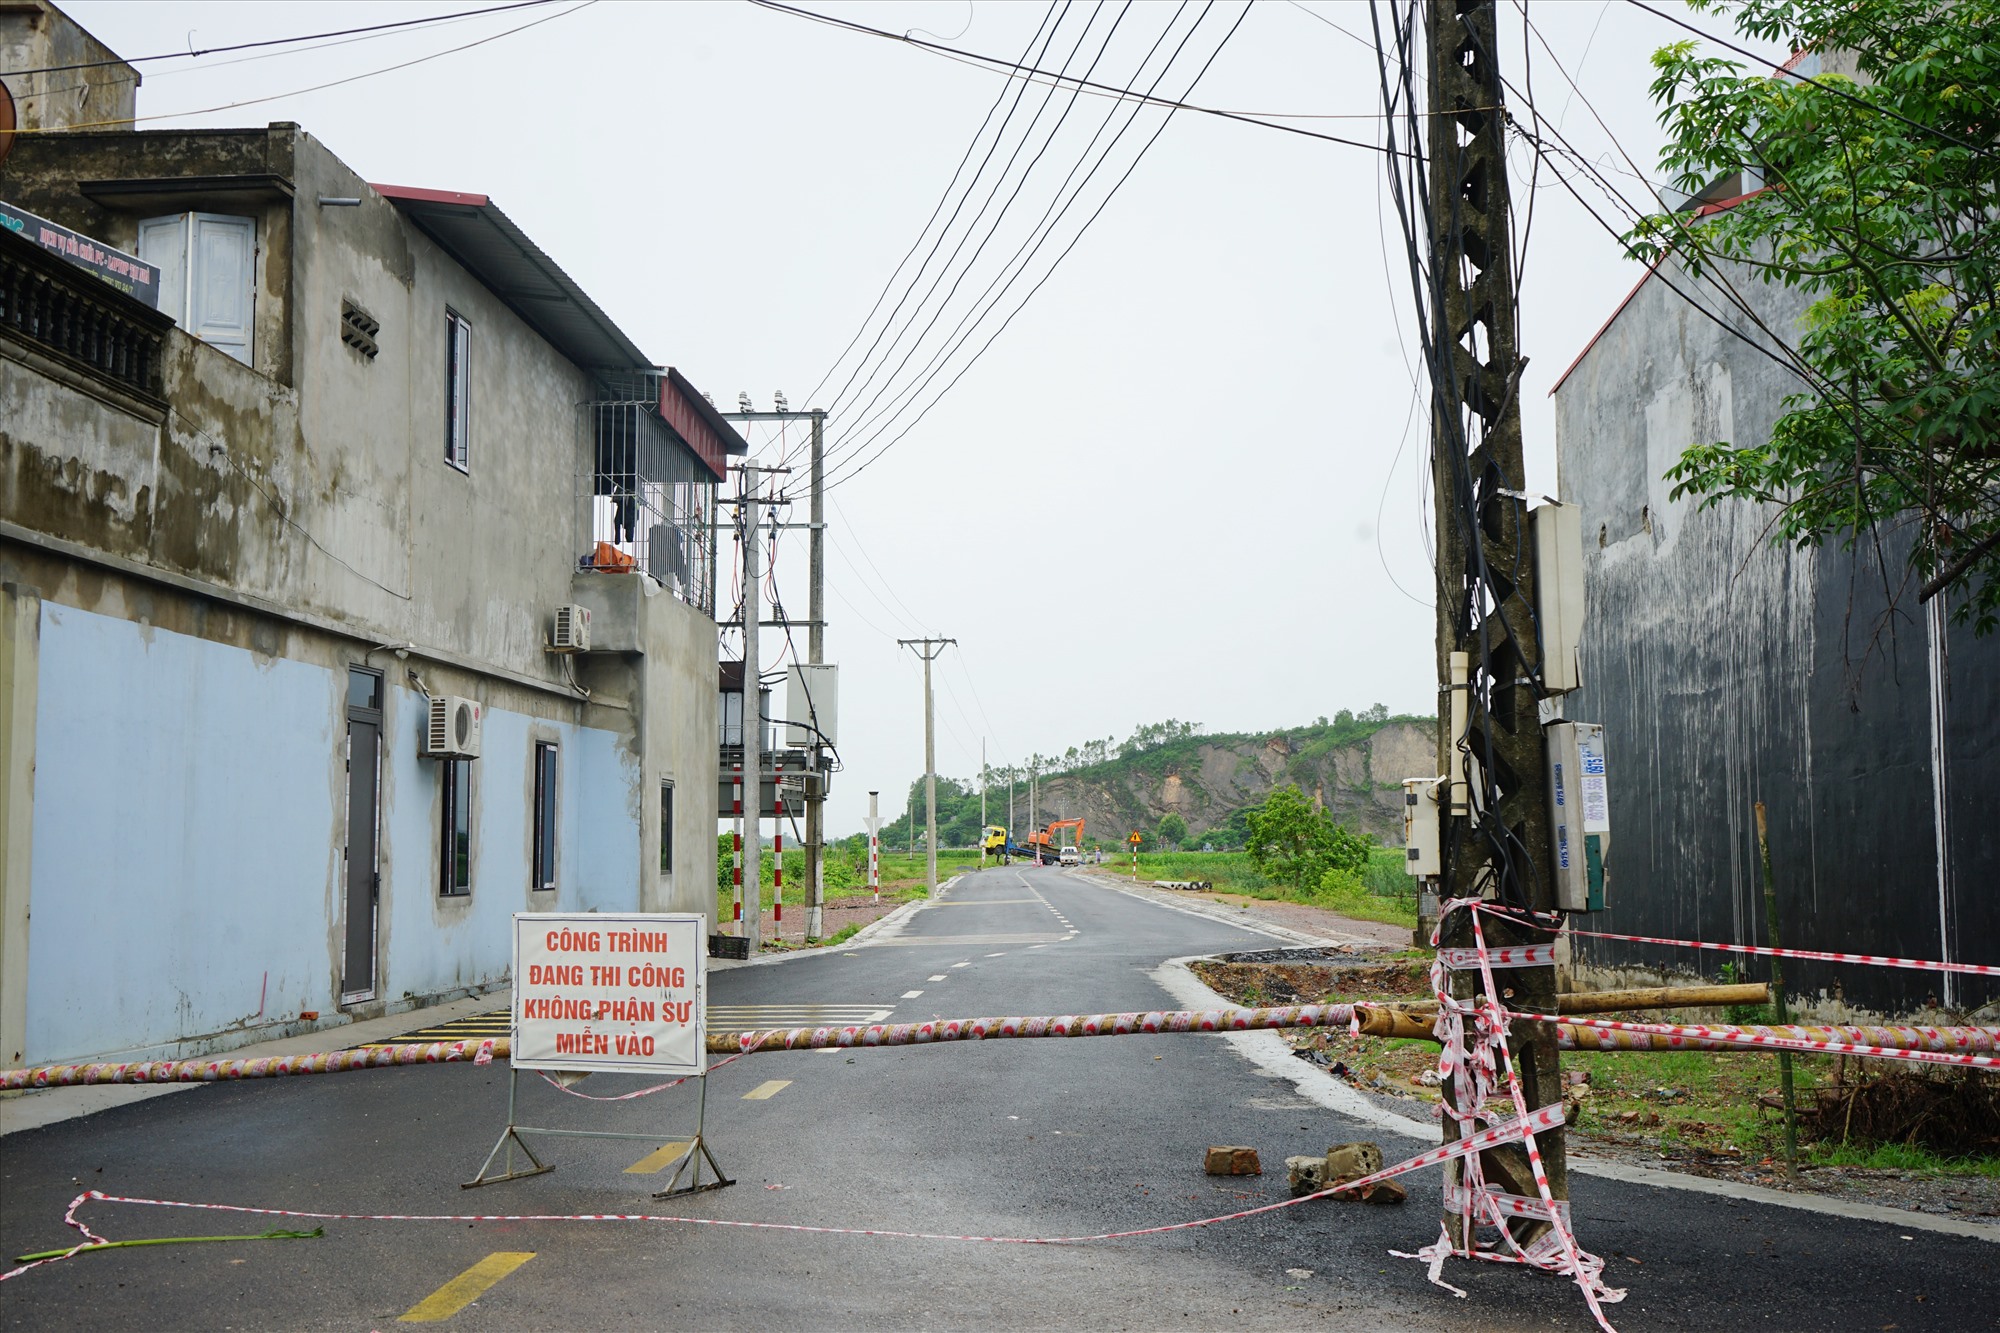 Sau khi xảy ra vụ tai nạn, lực lượng chức năng huyện Hoằng Hóa đã cho rào chắn ở 2 đầu tuyền đường và không cho các phương tiên đi vào. Ảnh: Quách Du